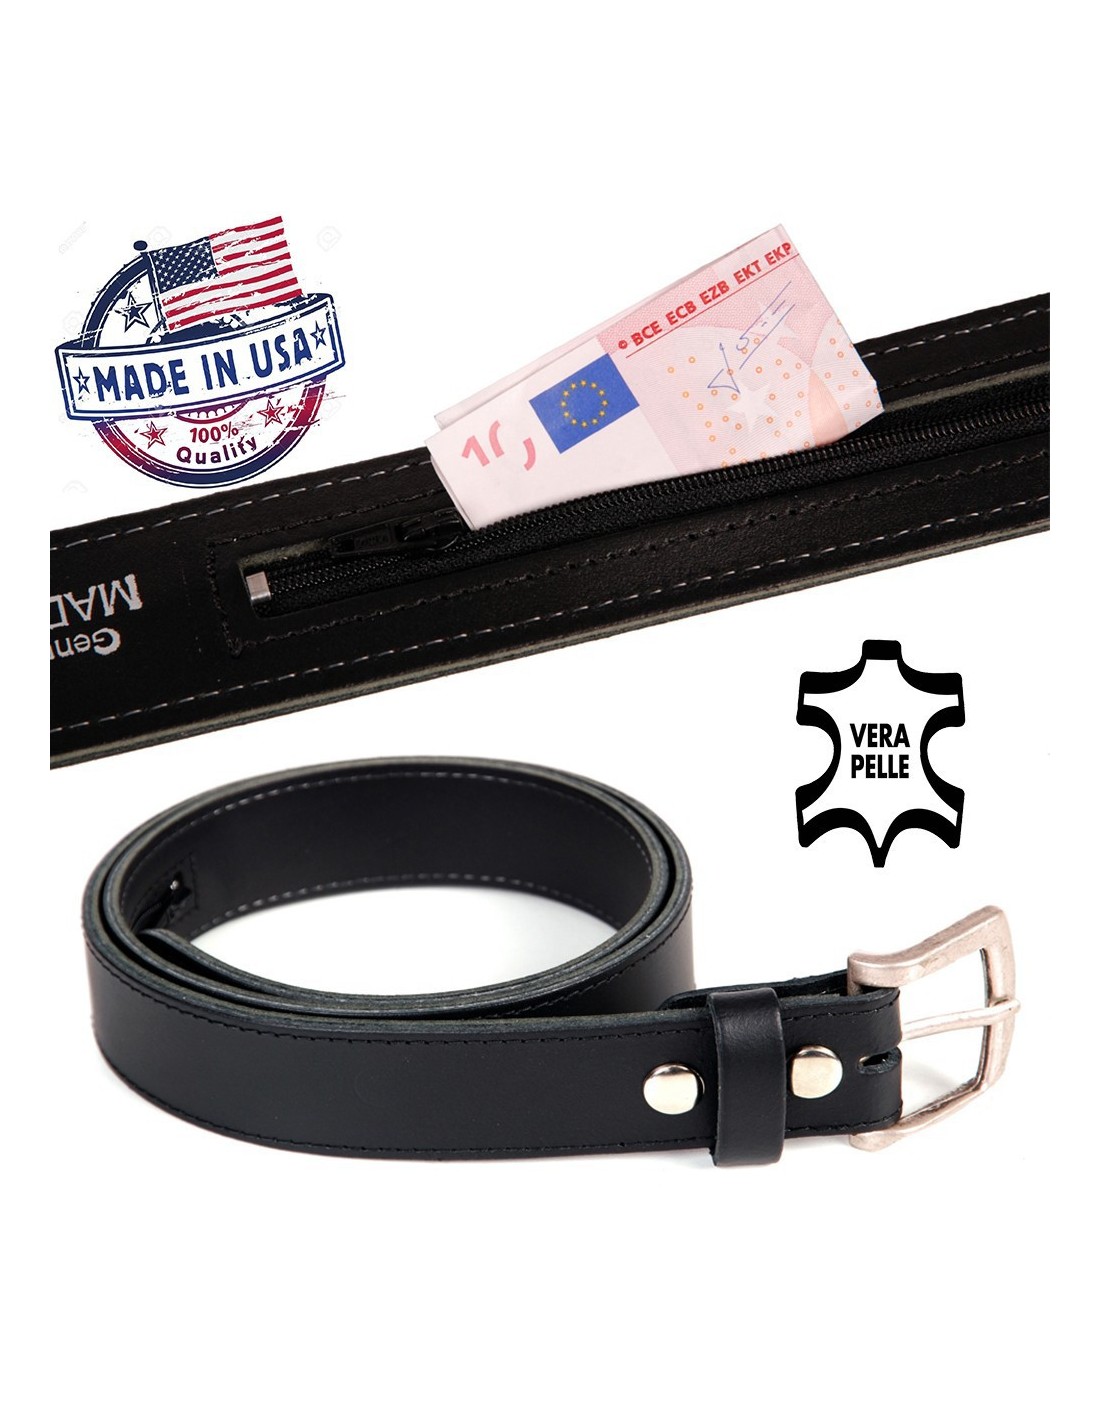 Cintura in vera pelle USA con tasca nascosta - Portafoglio portasoldi